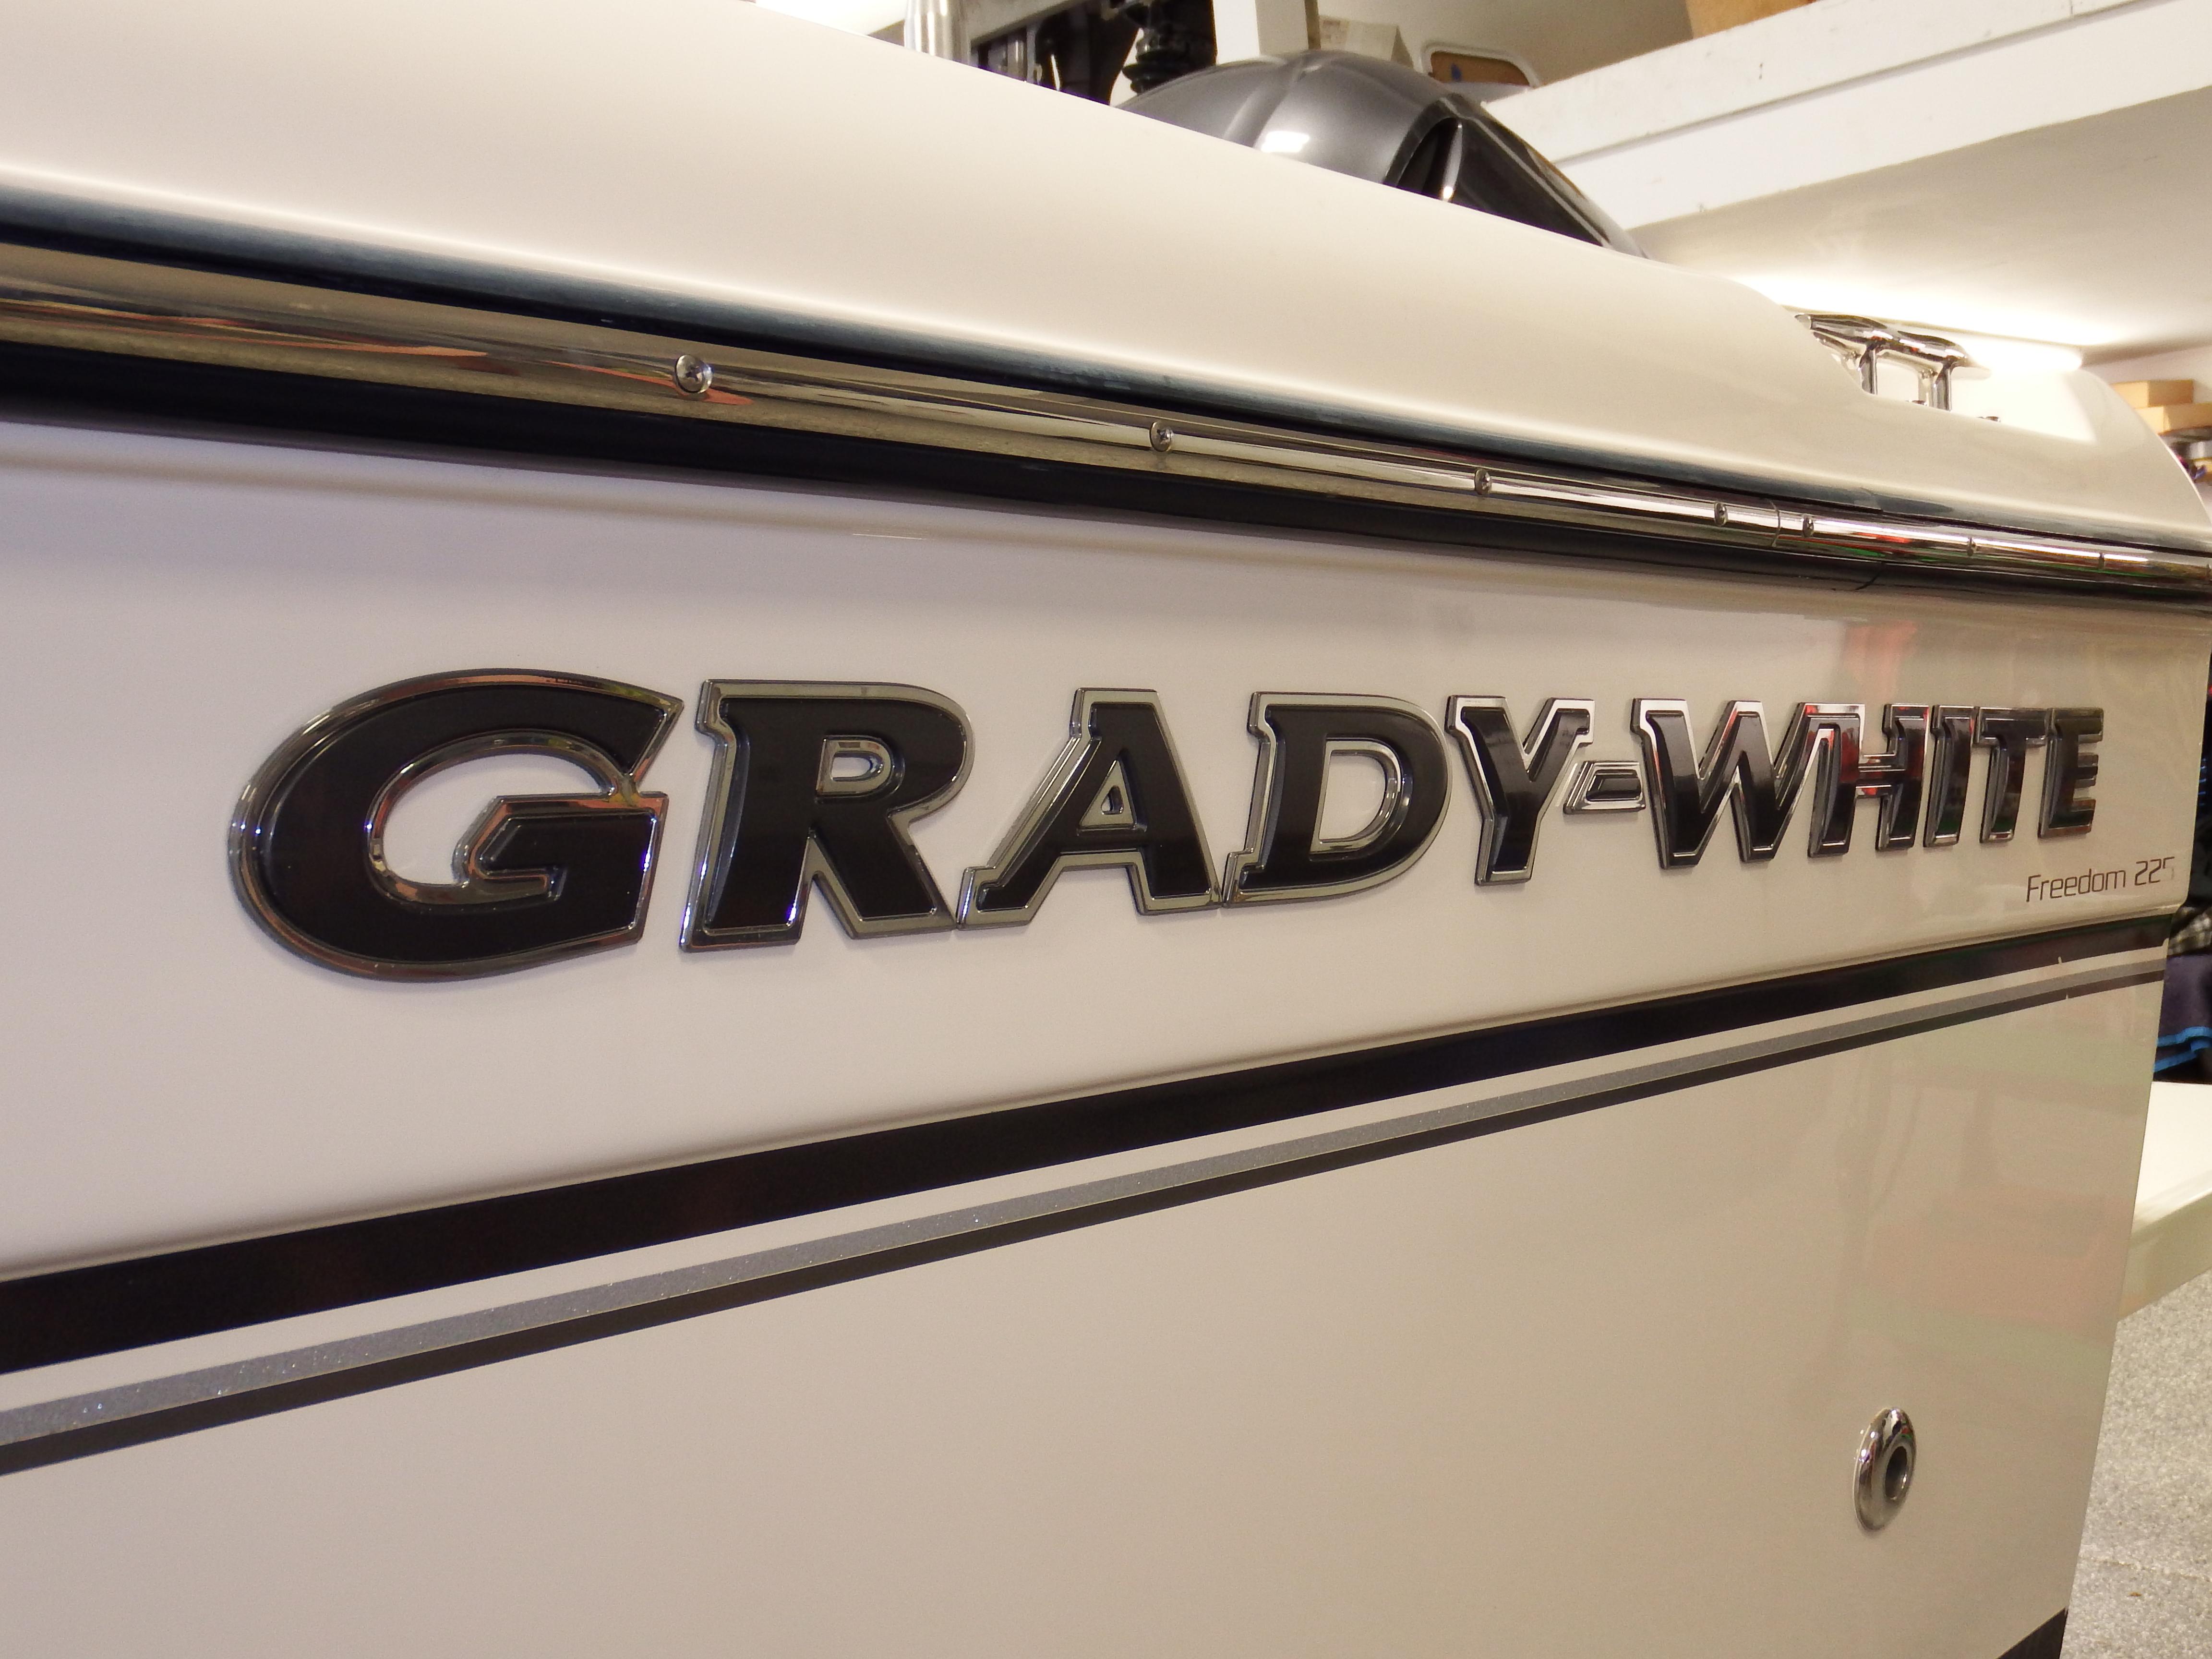 2016 Grady-White Freedom 225